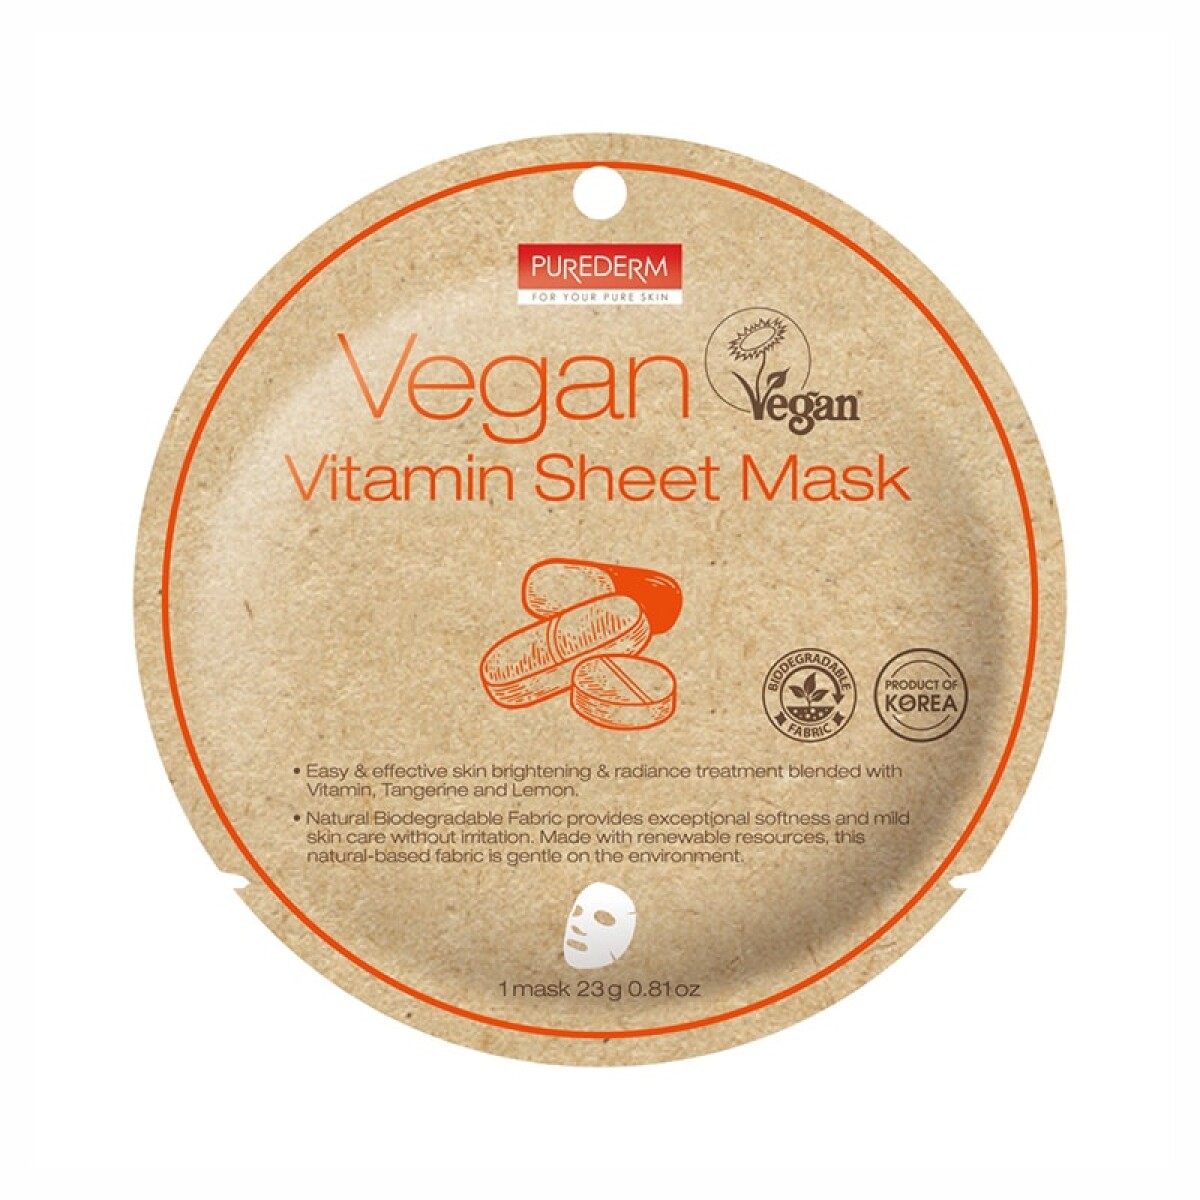 Purederm Vegan Vitamin Sheet Mask 